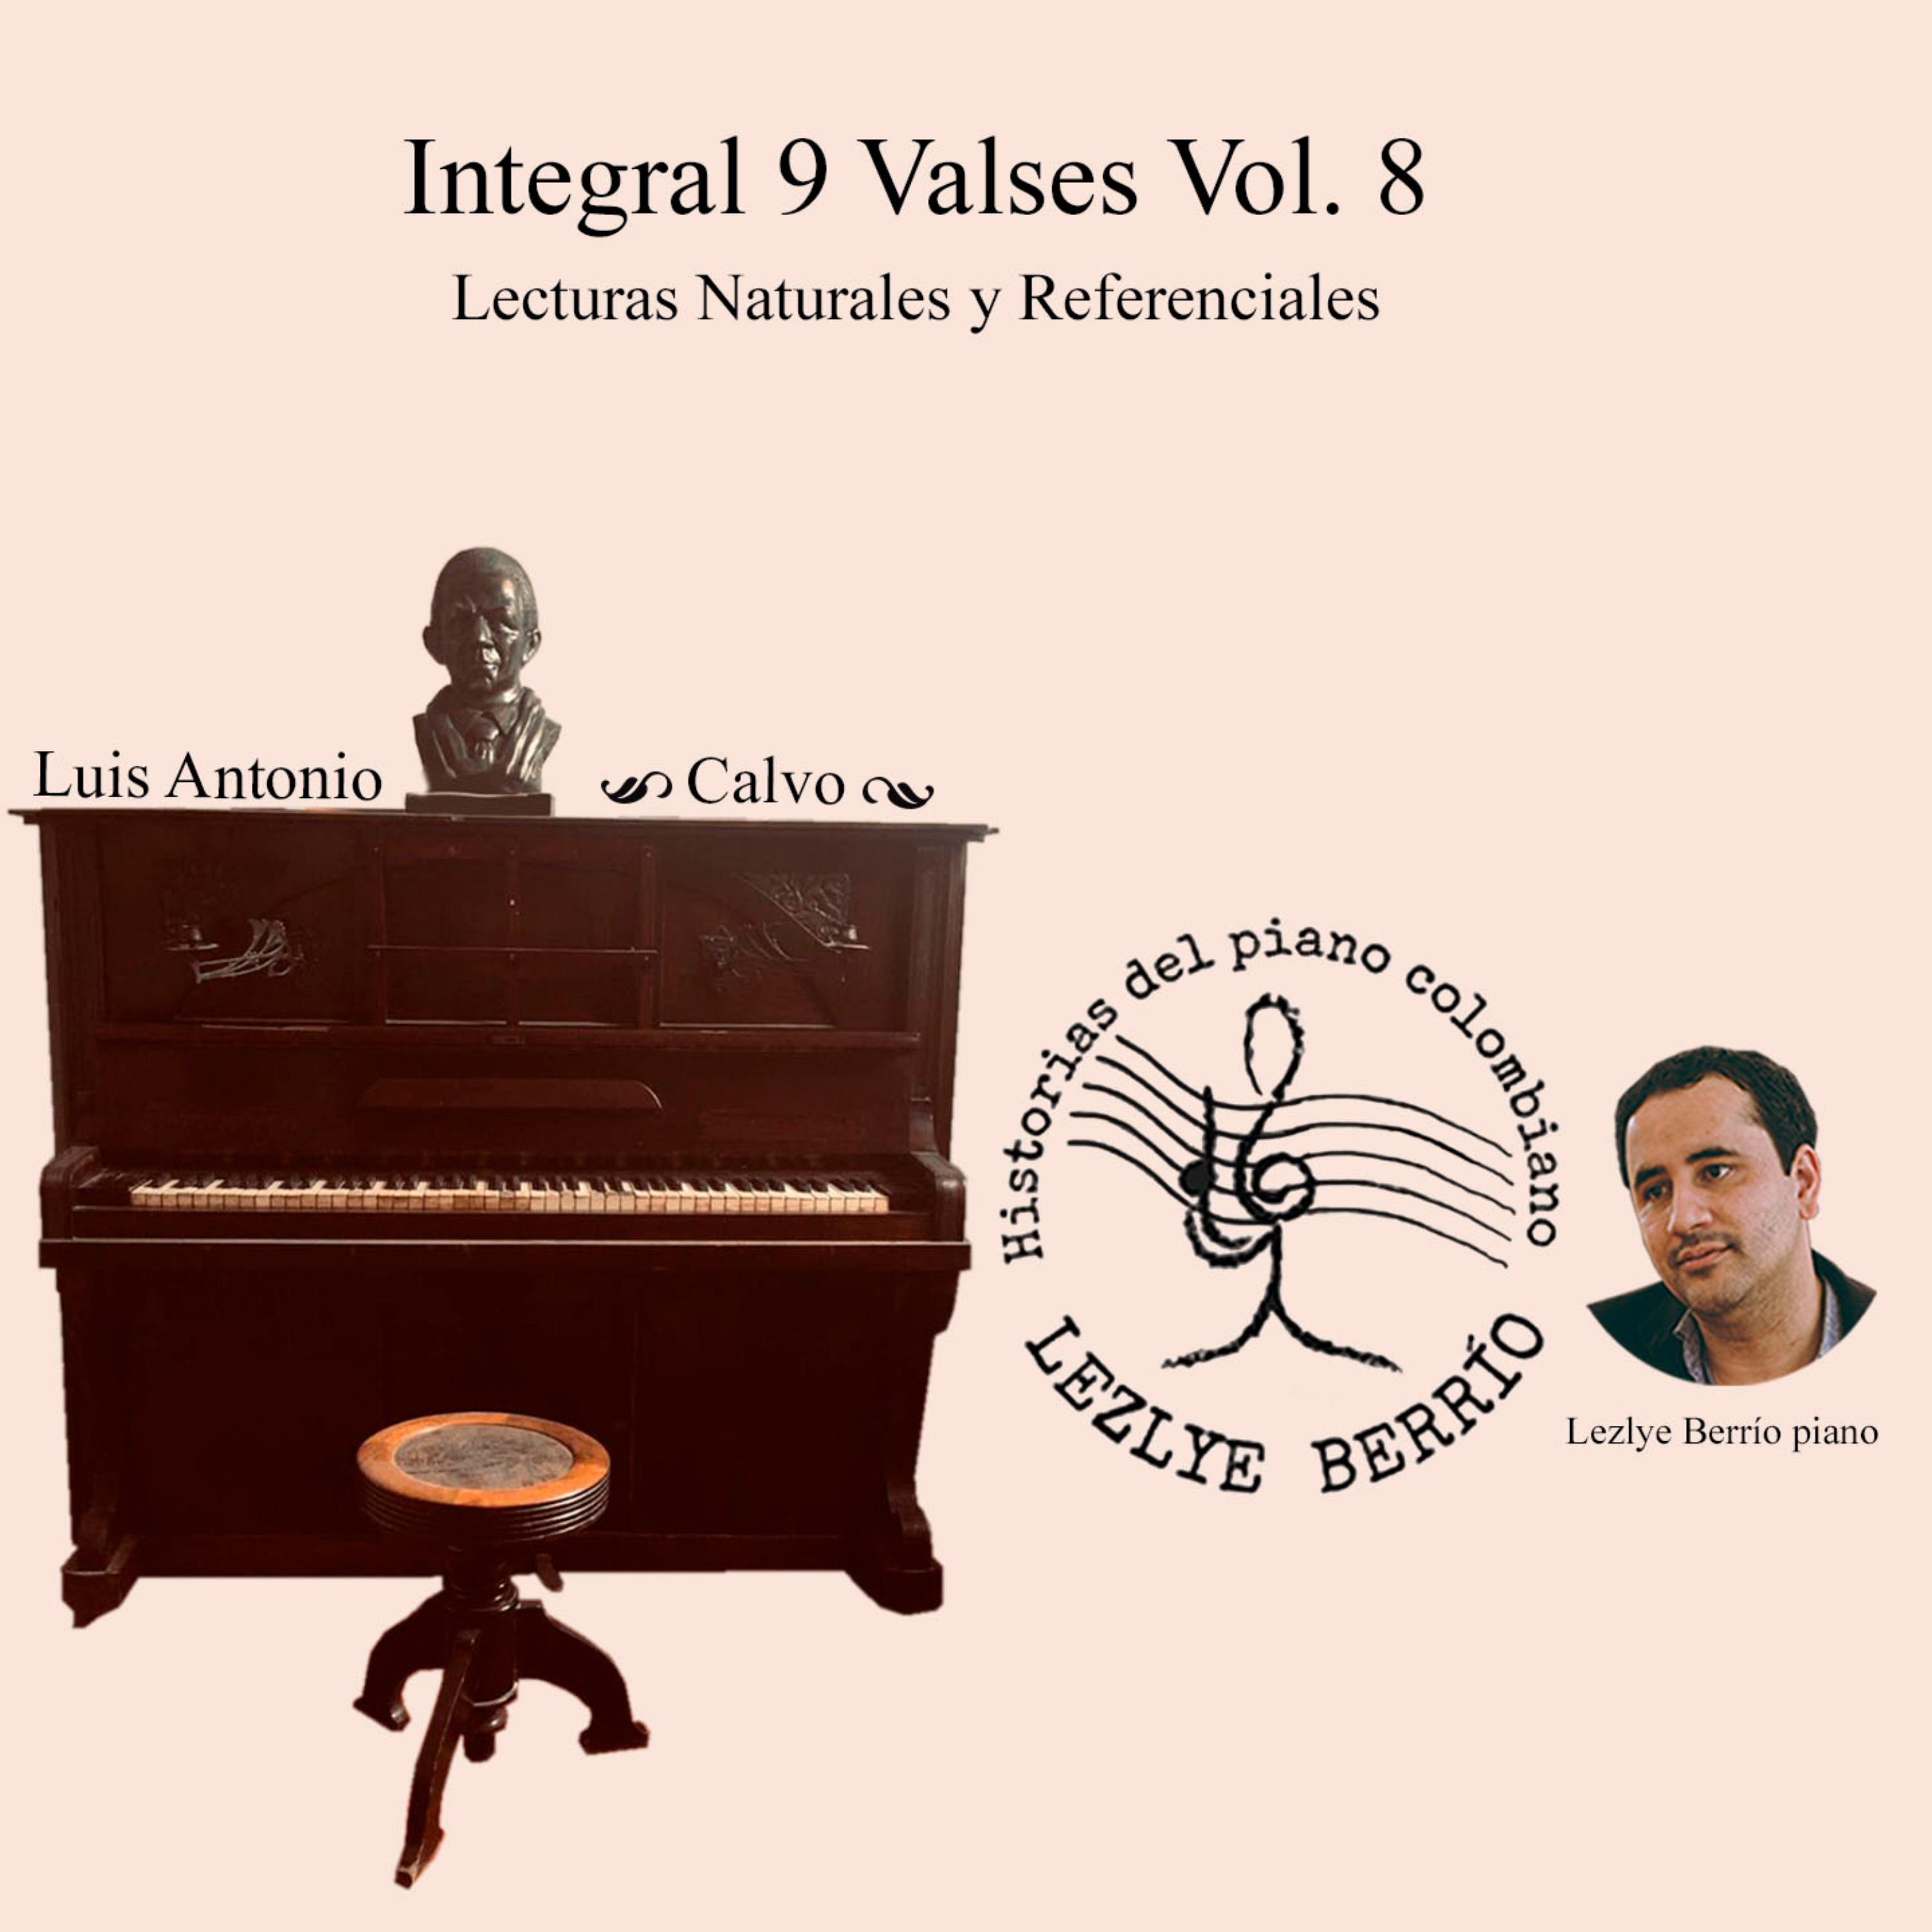 Постер альбома Historias del Piano Colombiano, Lecturas Naturales y Referenciales. Integral Luis Antonio Calvo, 9 Valses, Vol. 8